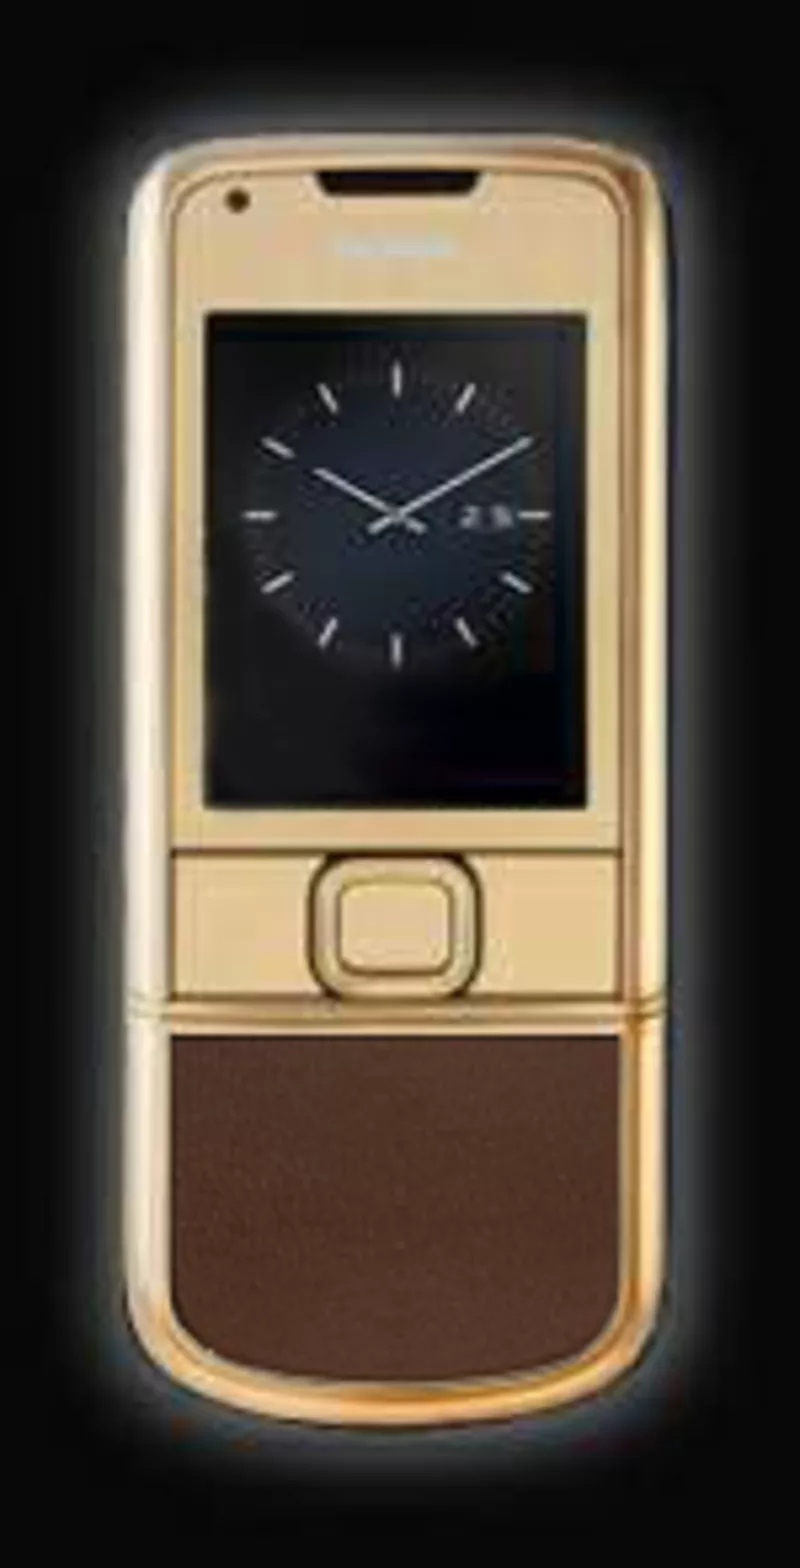 Nokia 8800 Gold Arte (коричневая кожа) 2200 грн.